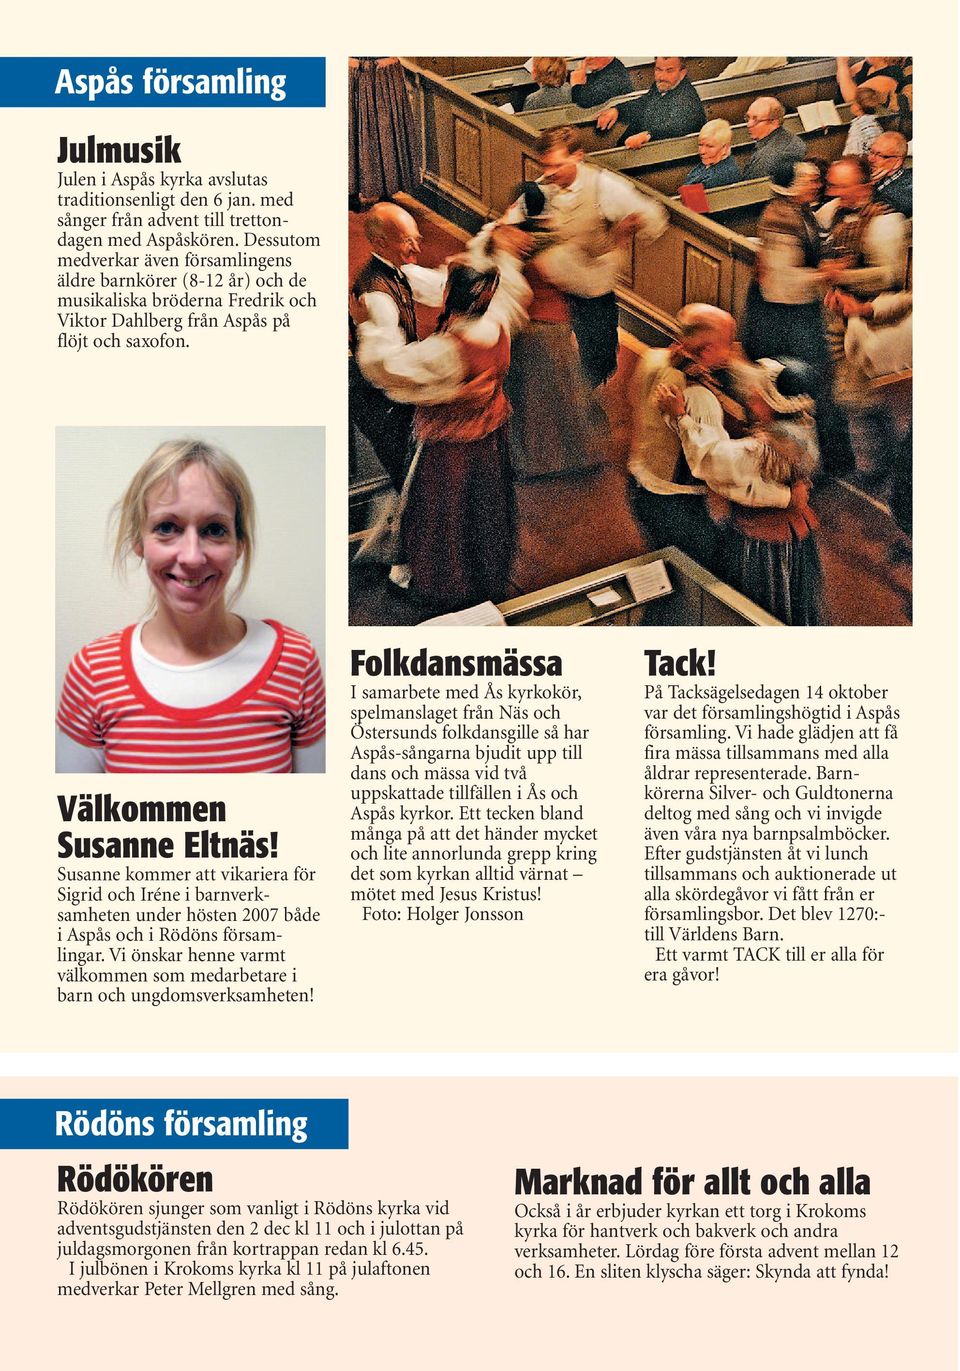 Susanne kommer att vikariera för Sigrid och Iréne i barnverksamheten under hösten 2007 både i Aspås och i Rödöns församlingar.